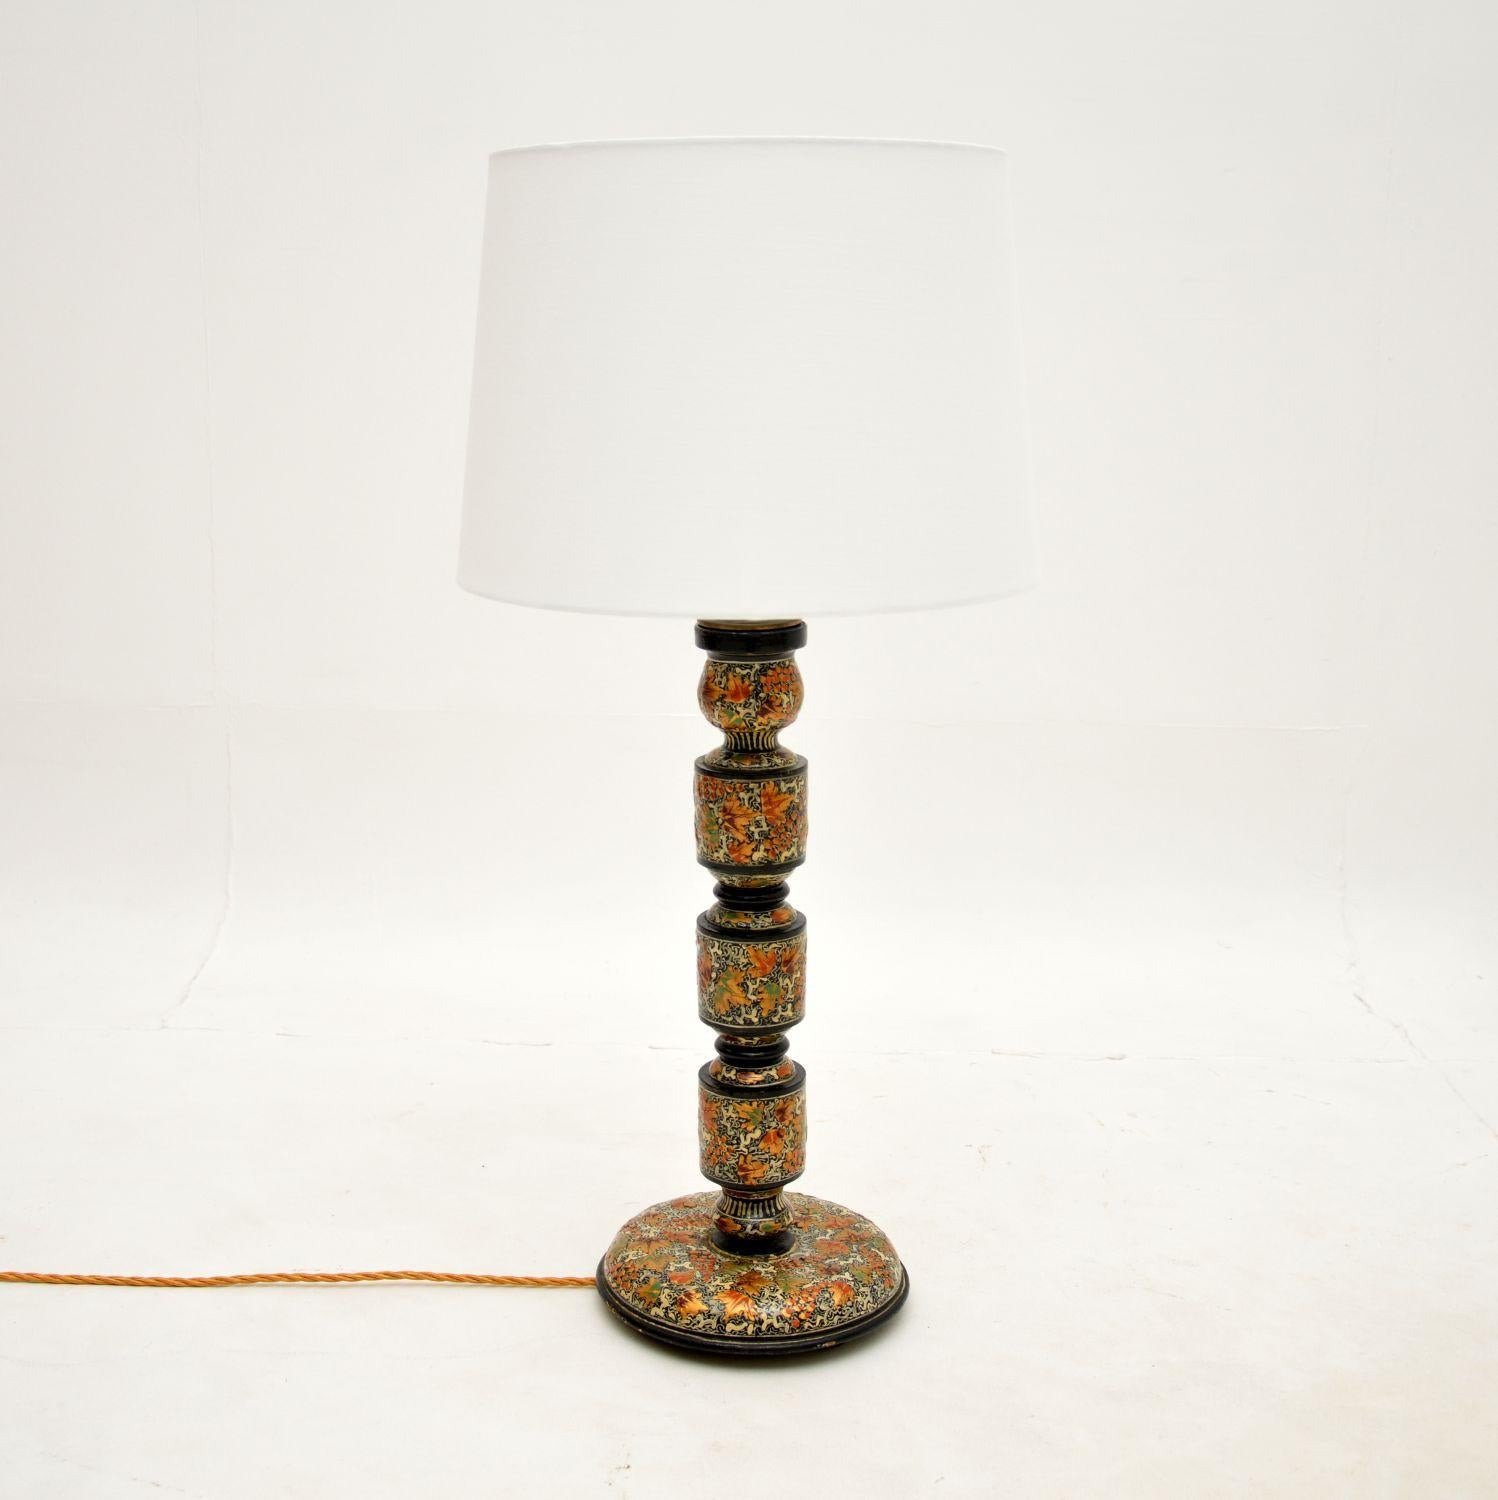 Une étonnante et très inhabituelle lampe de table ancienne en chinoiserie laquée. Il a probablement été fabriqué en Angleterre et date d'environ les années 1920.

Il présente des décorations laquées et peintes à la main absolument splendides, avec